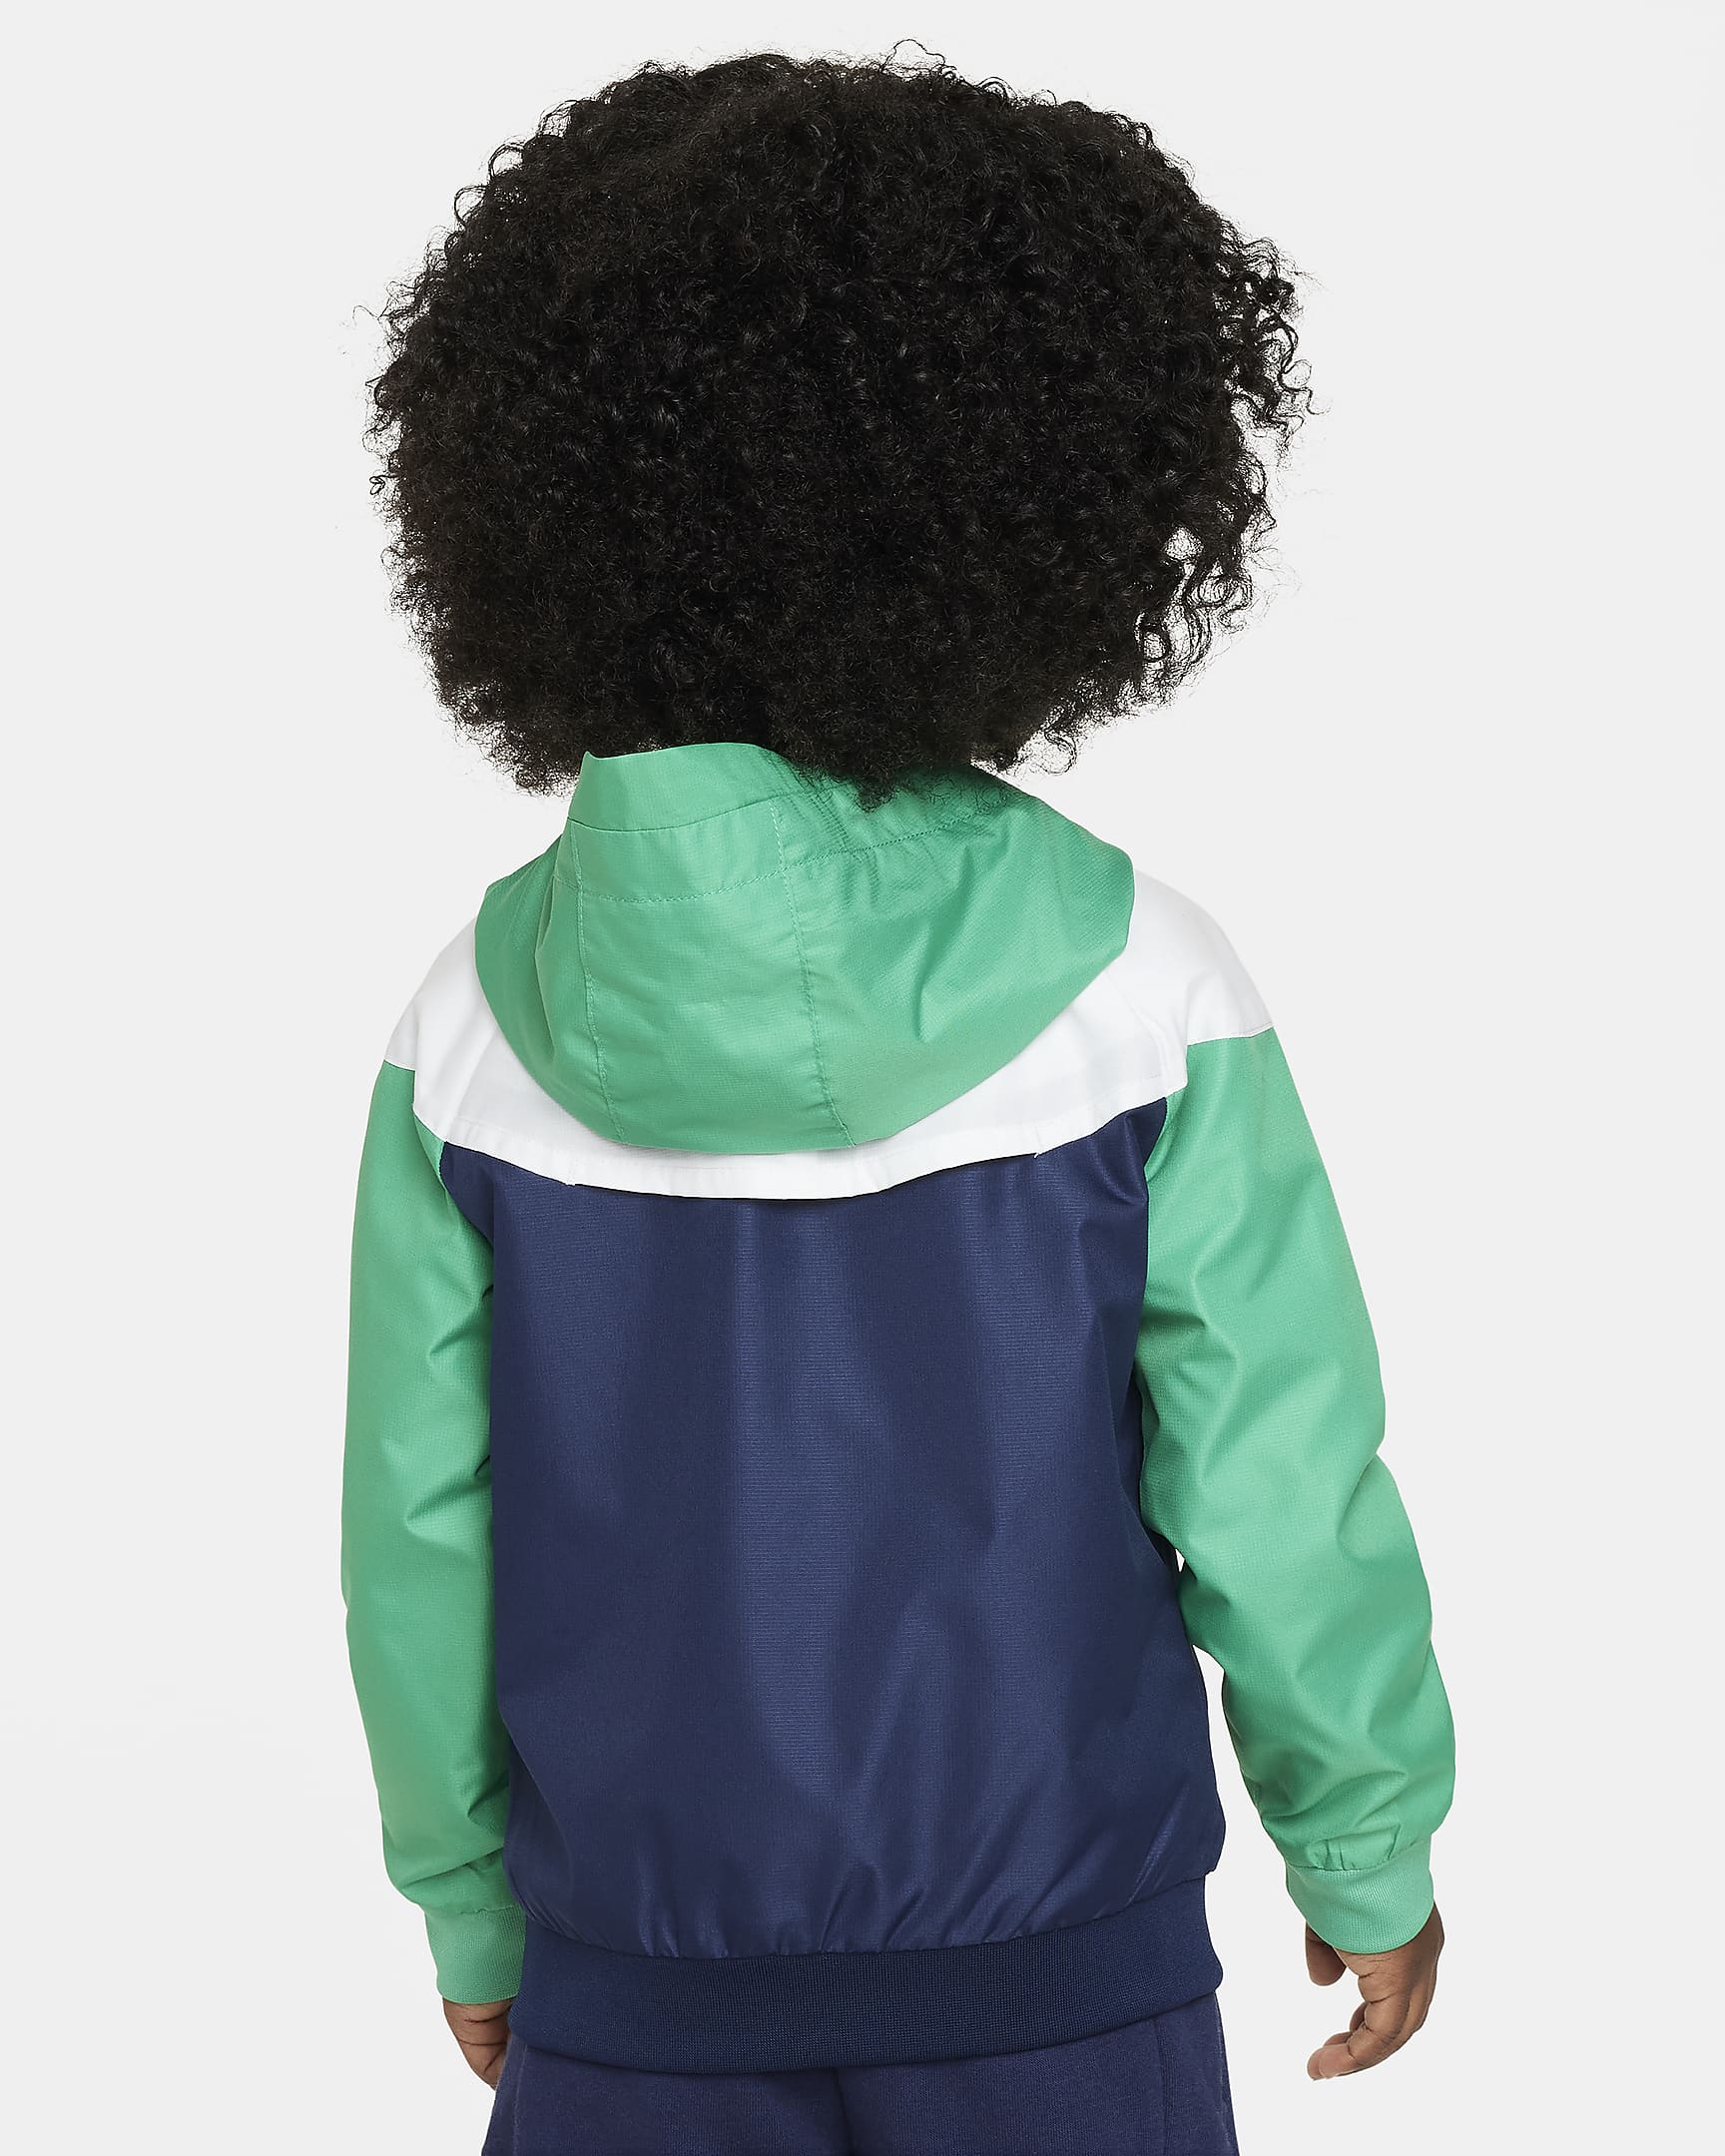 Nike Sportswear Windrunner Toddler Full-Zip Jacket. Nike.com